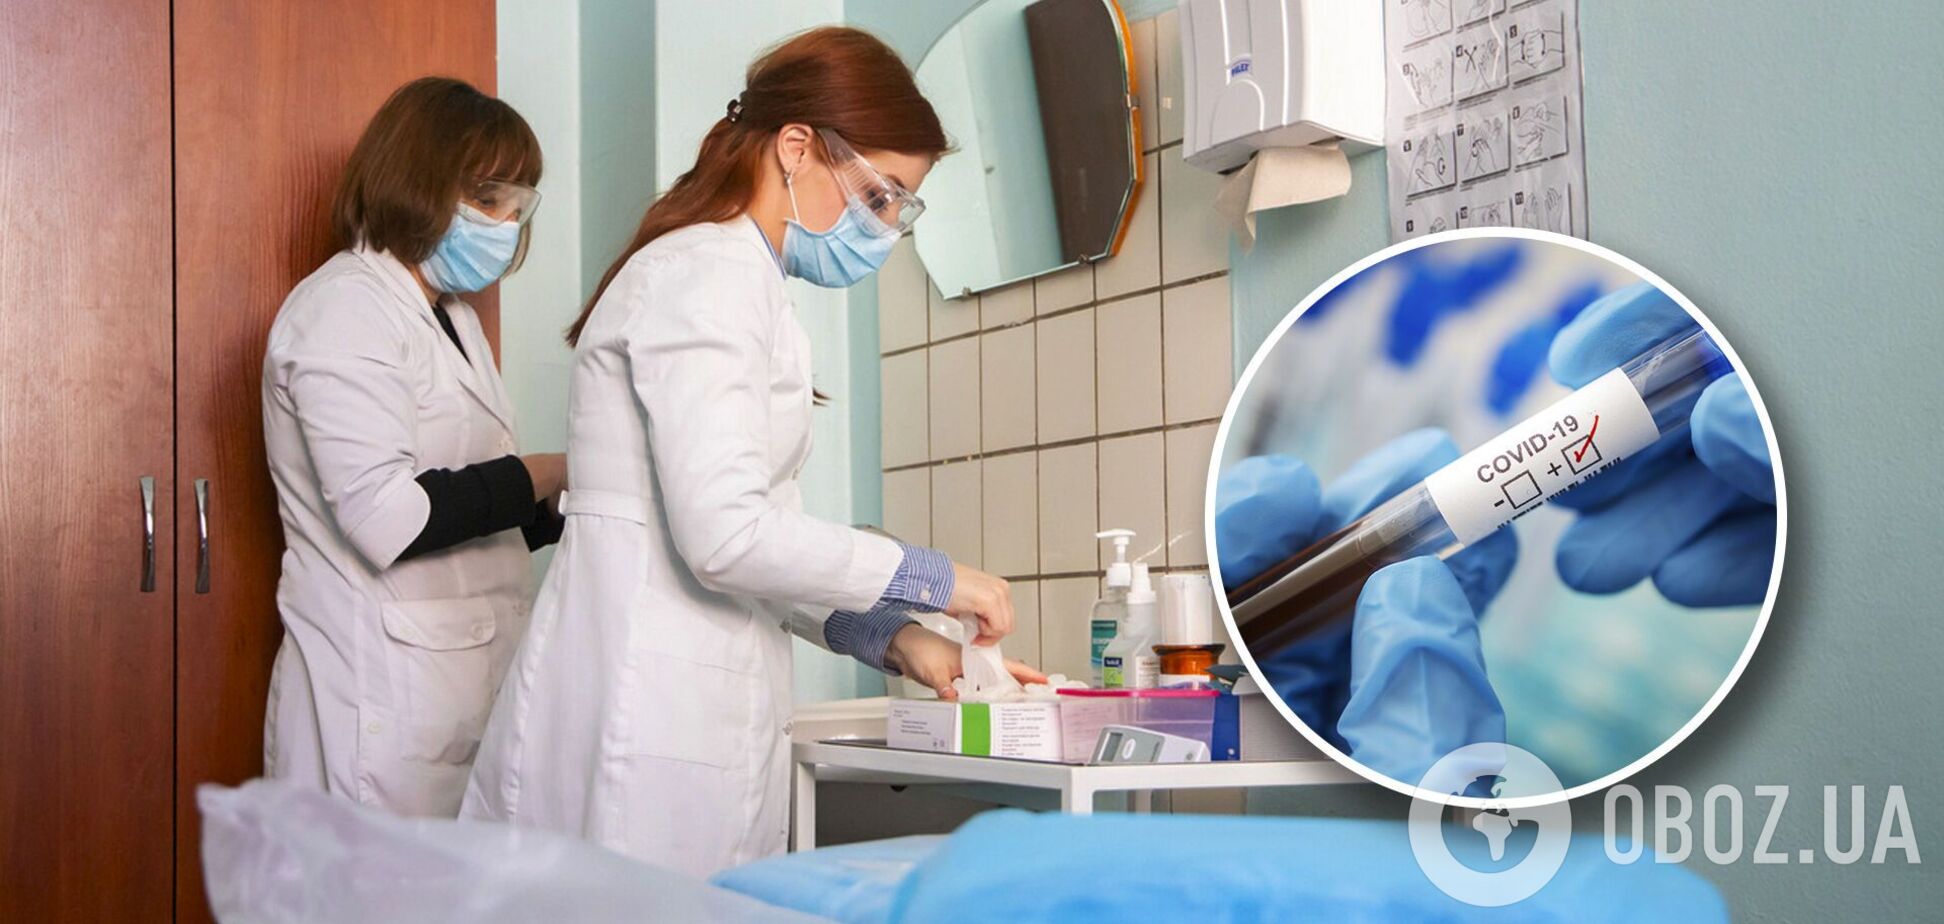 В Киеве выбросились из окна двое больных COVID-19: как вирус связан с суицидом и кто в зоне риска